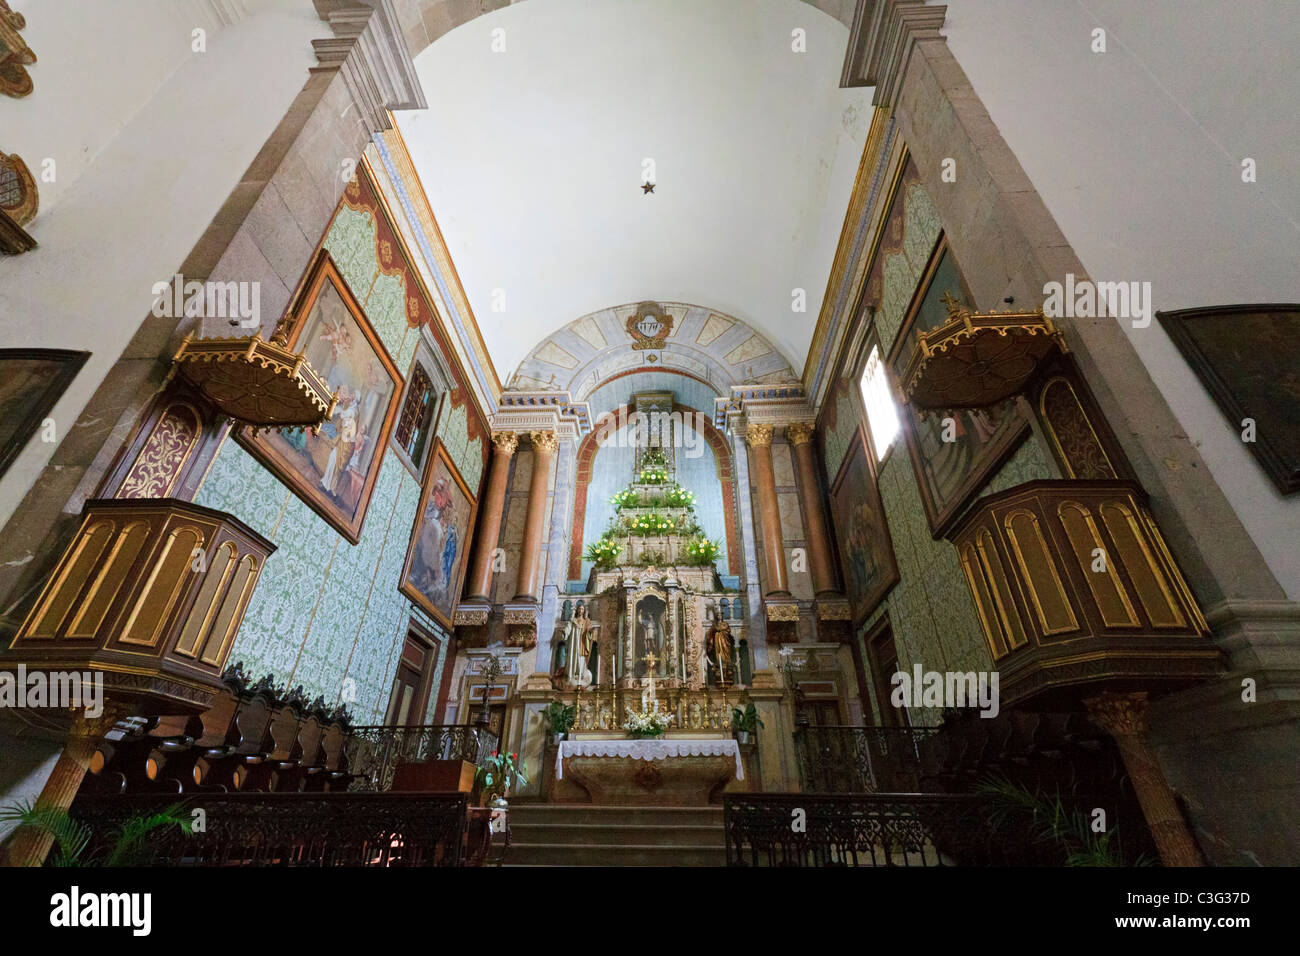 Interior of Igreja da Misericordia, Tavira, Portugal Stock Photo